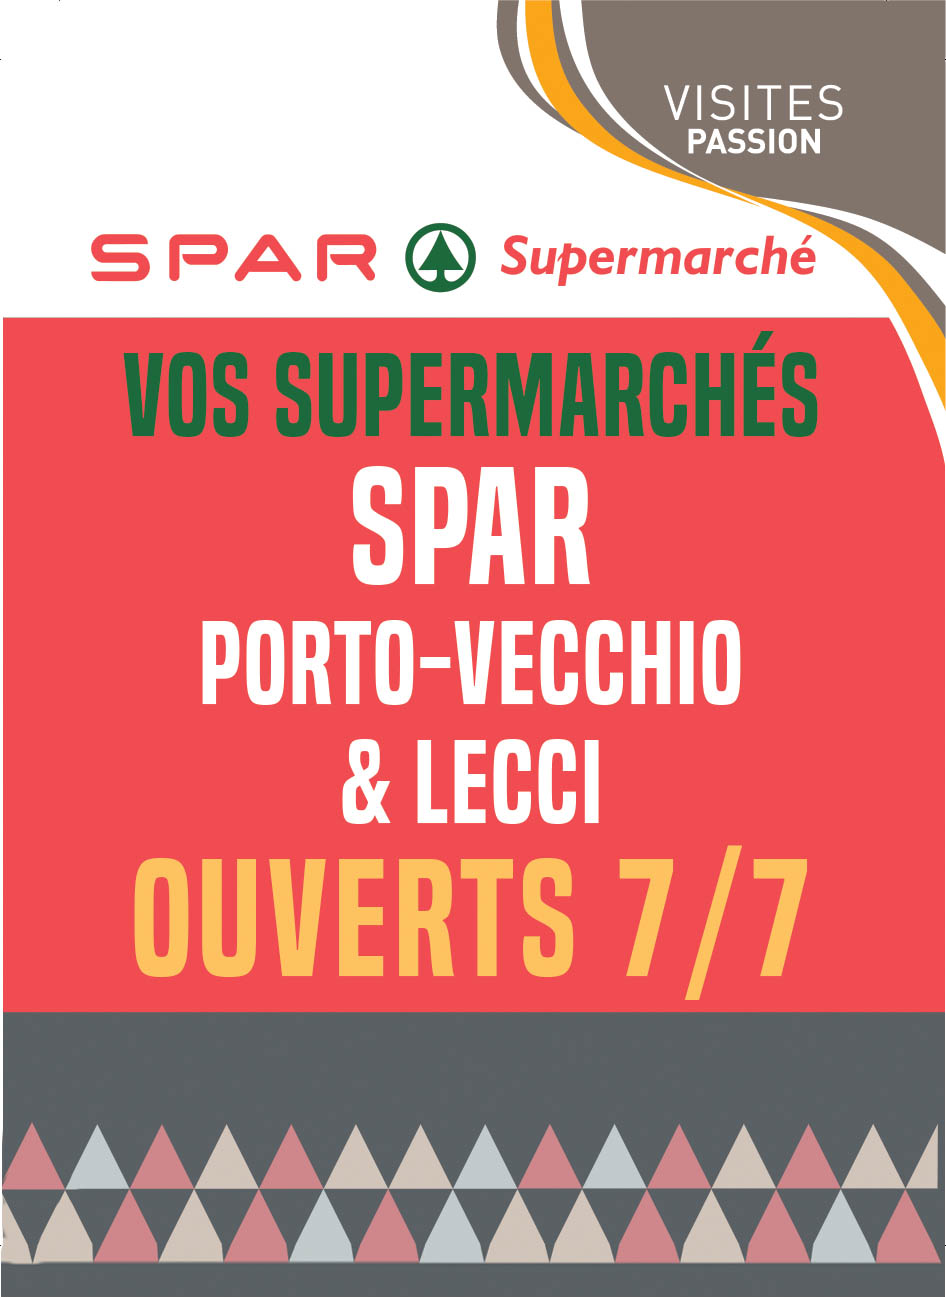 SPAR PORTO-VECCHIO & LECCI